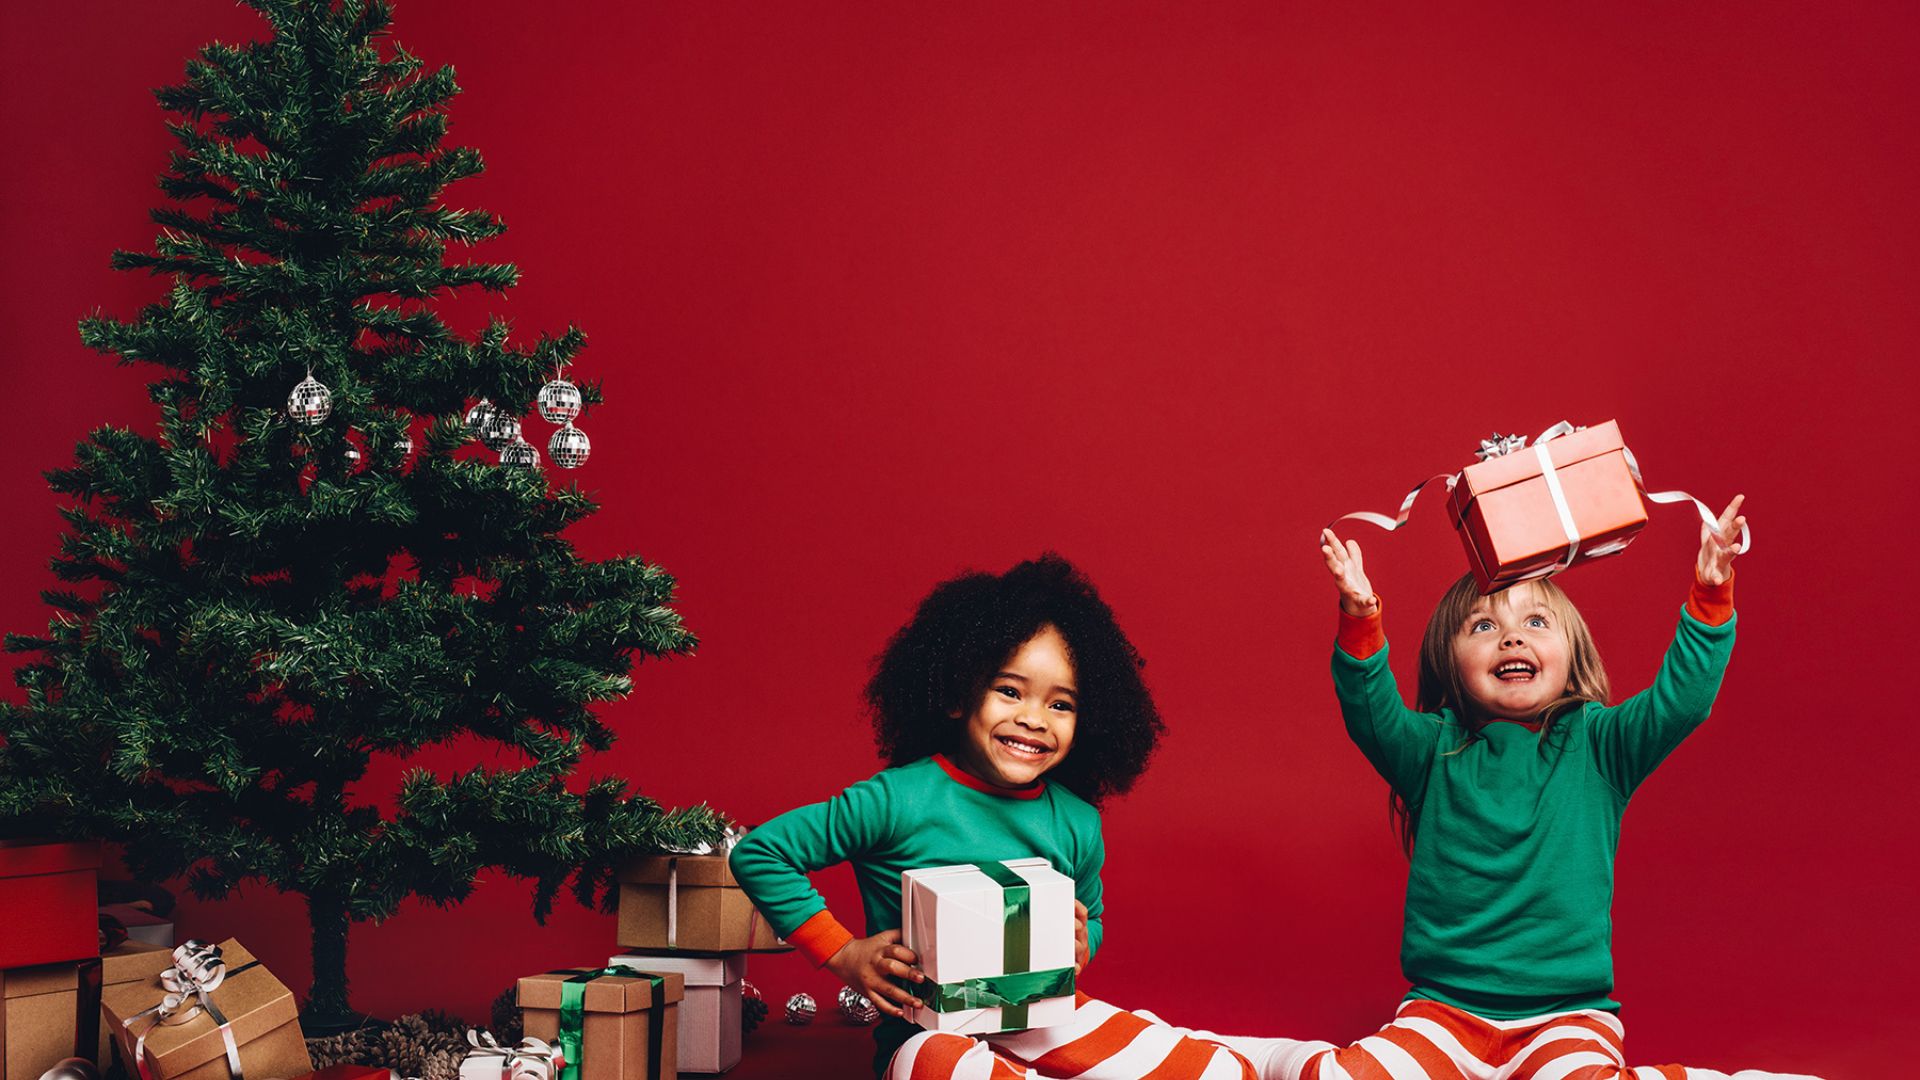 Imagem de fundo vermelho. Do lado esquerdo da tela um pinheiro de Natal e sob ele, caixas de presentes no chão. Em destaque, duas crianças vestidas com calças listradas vermelho e branco e blusa de manga longa na cor verde. Ambas estão felizes e seguram seus presentes.